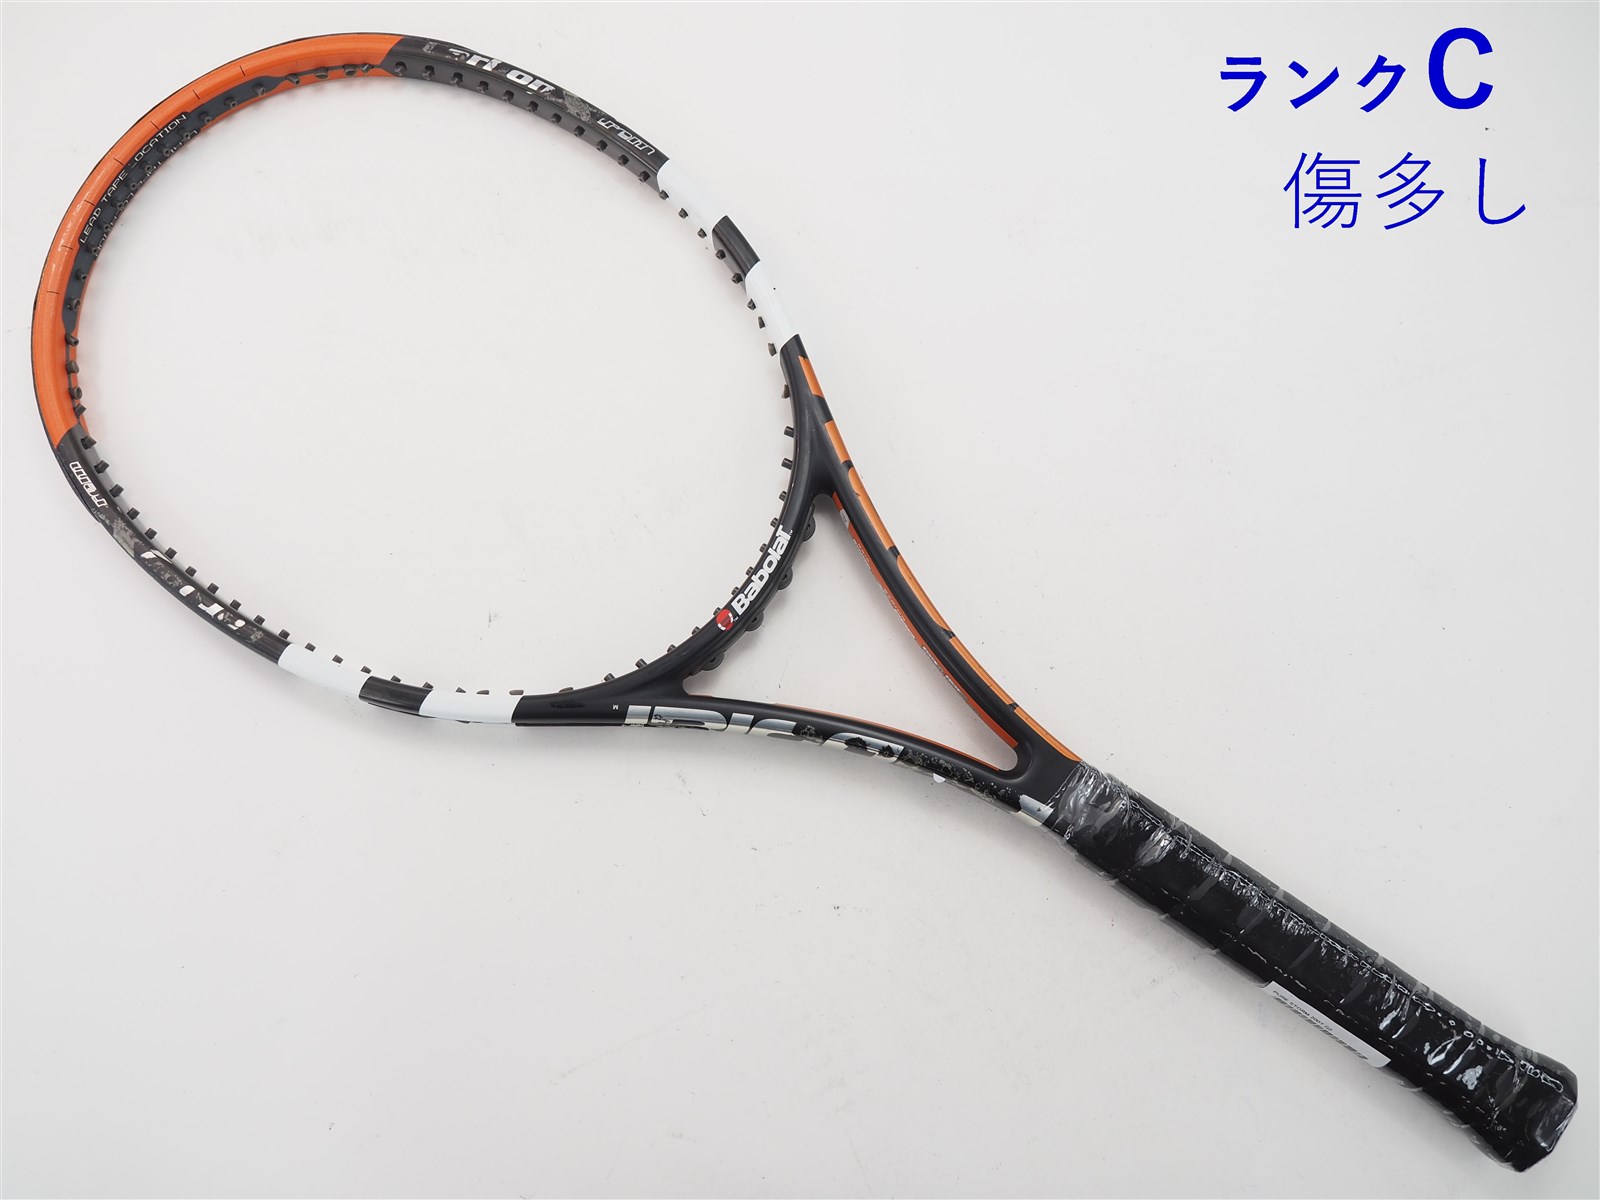 テニスラケット バボラ ピュア ストーム 2007年モデル【トップバンパー割れ有り】 (G2)BABOLAT PURE STORM 2007